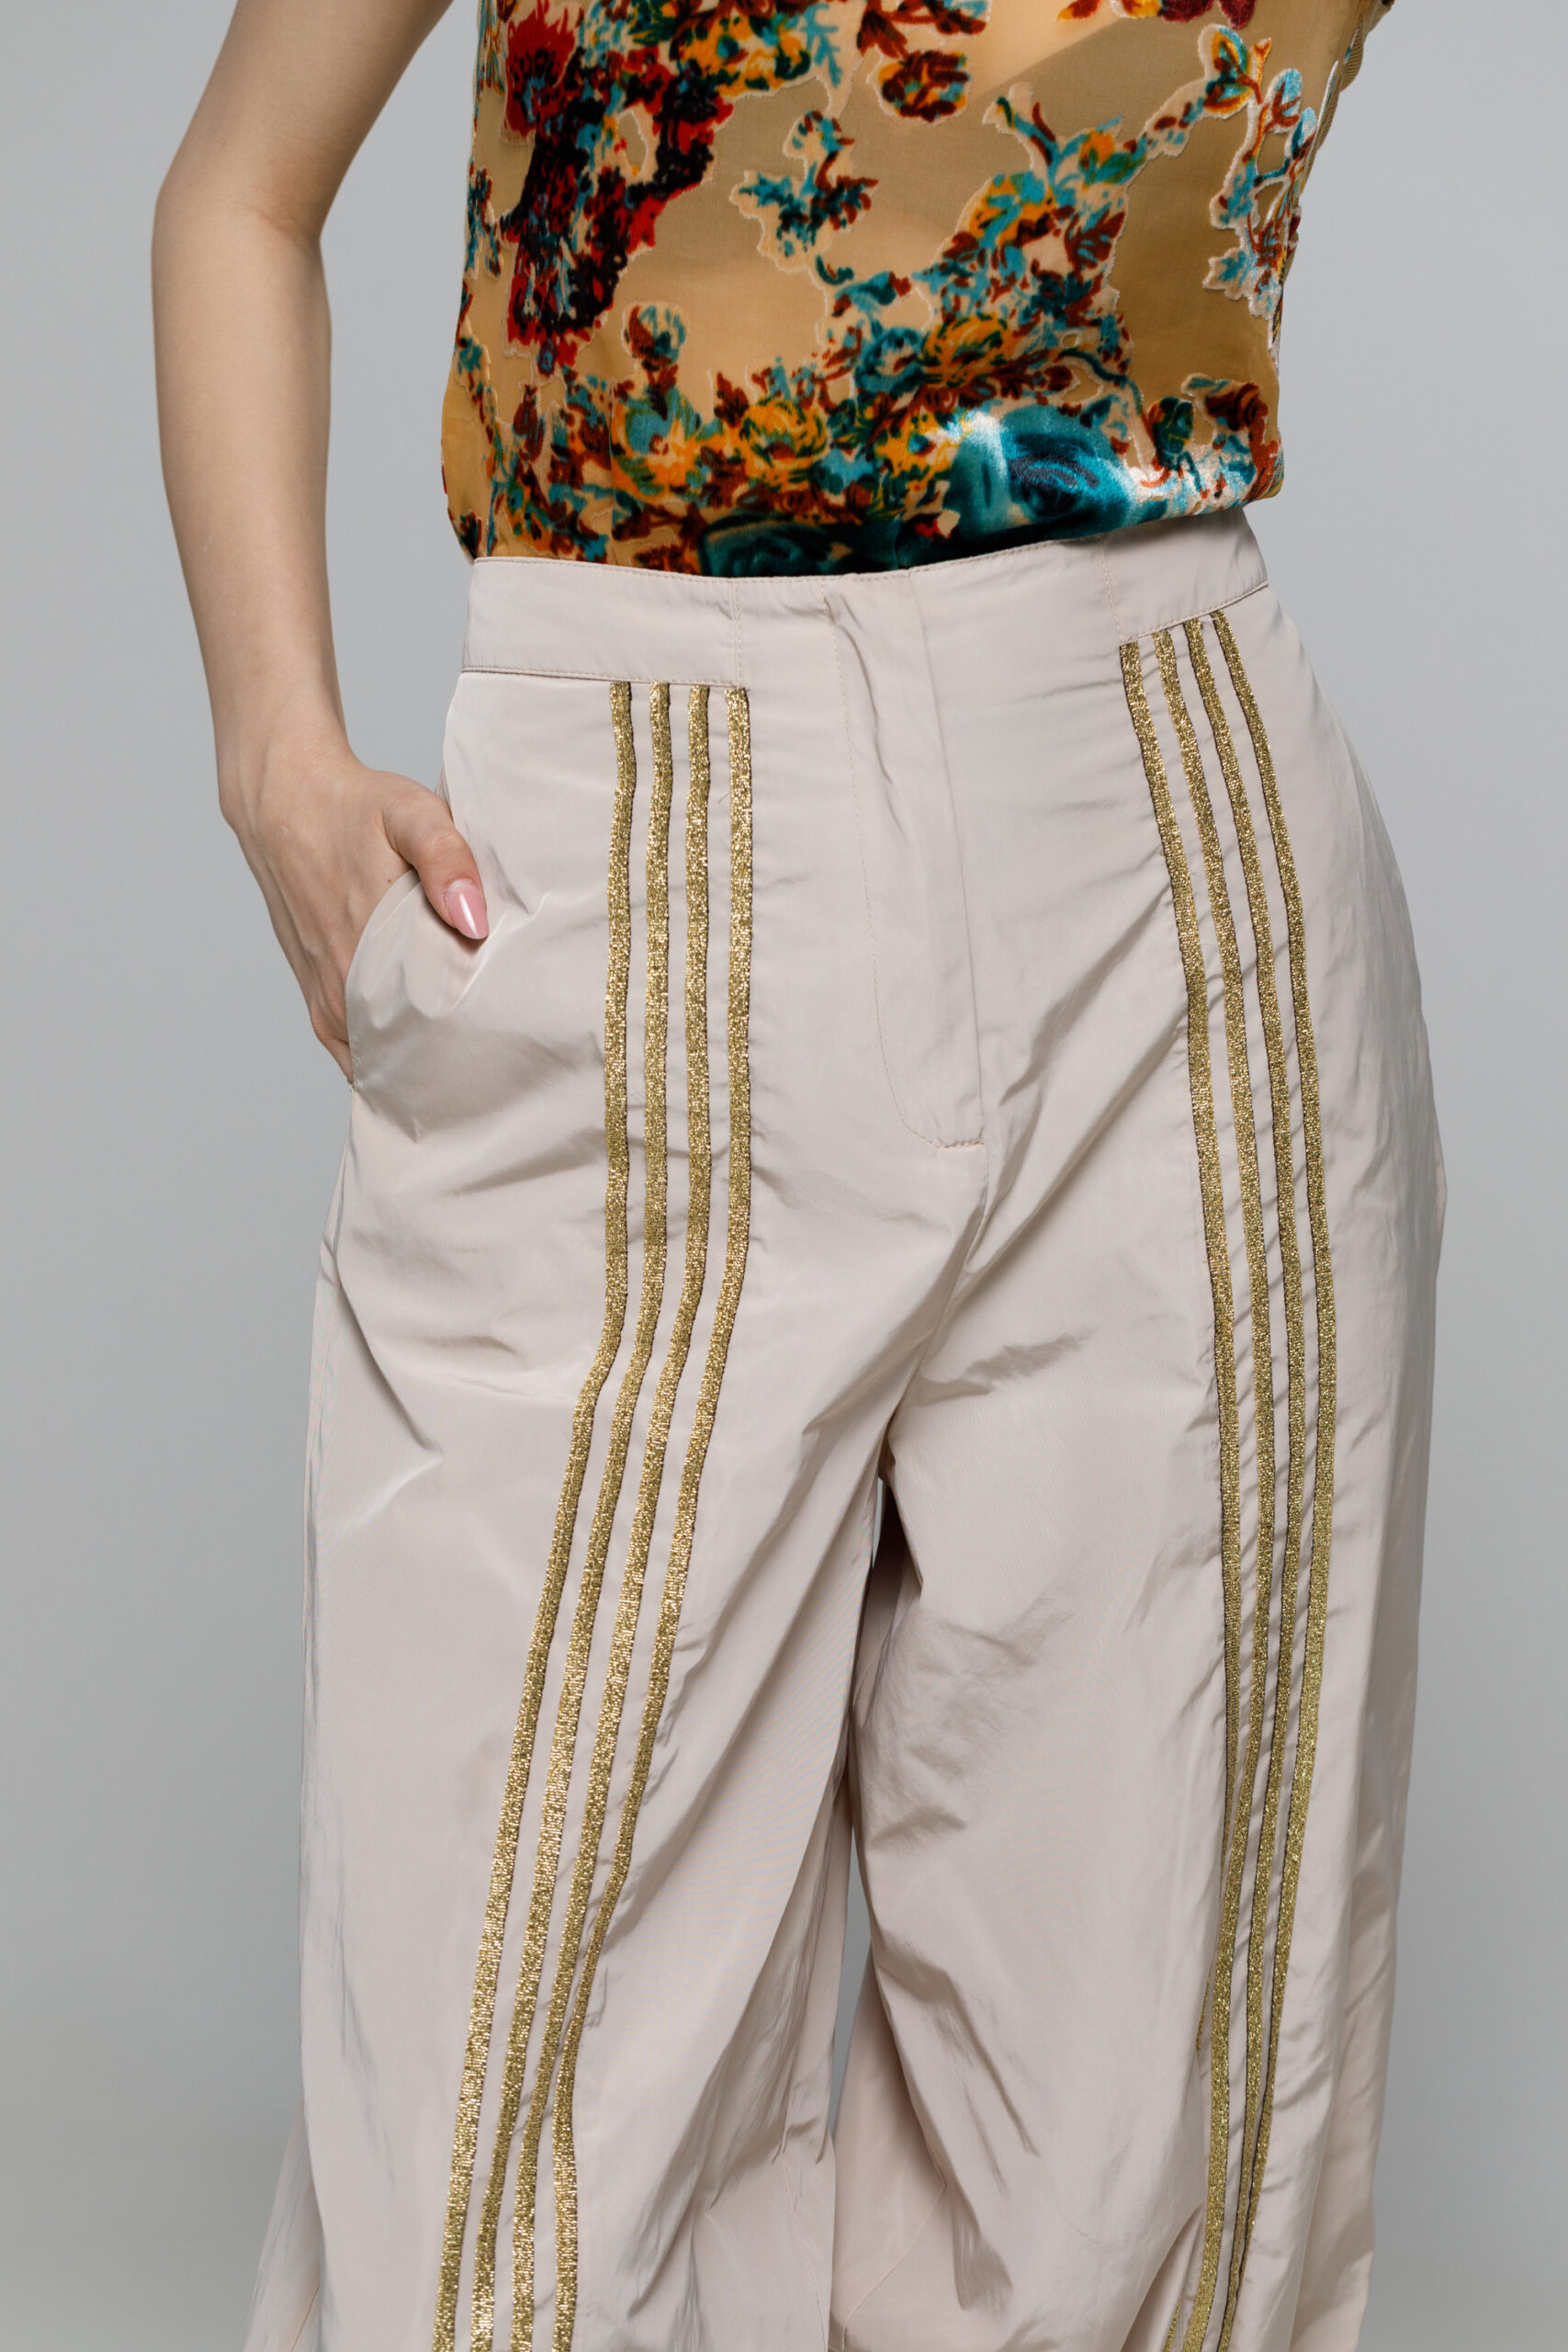 Pantalon LINDA24 crem cu aplicatii aurii. Materiale naturale, design unicat, cu broderie si aplicatii handmade